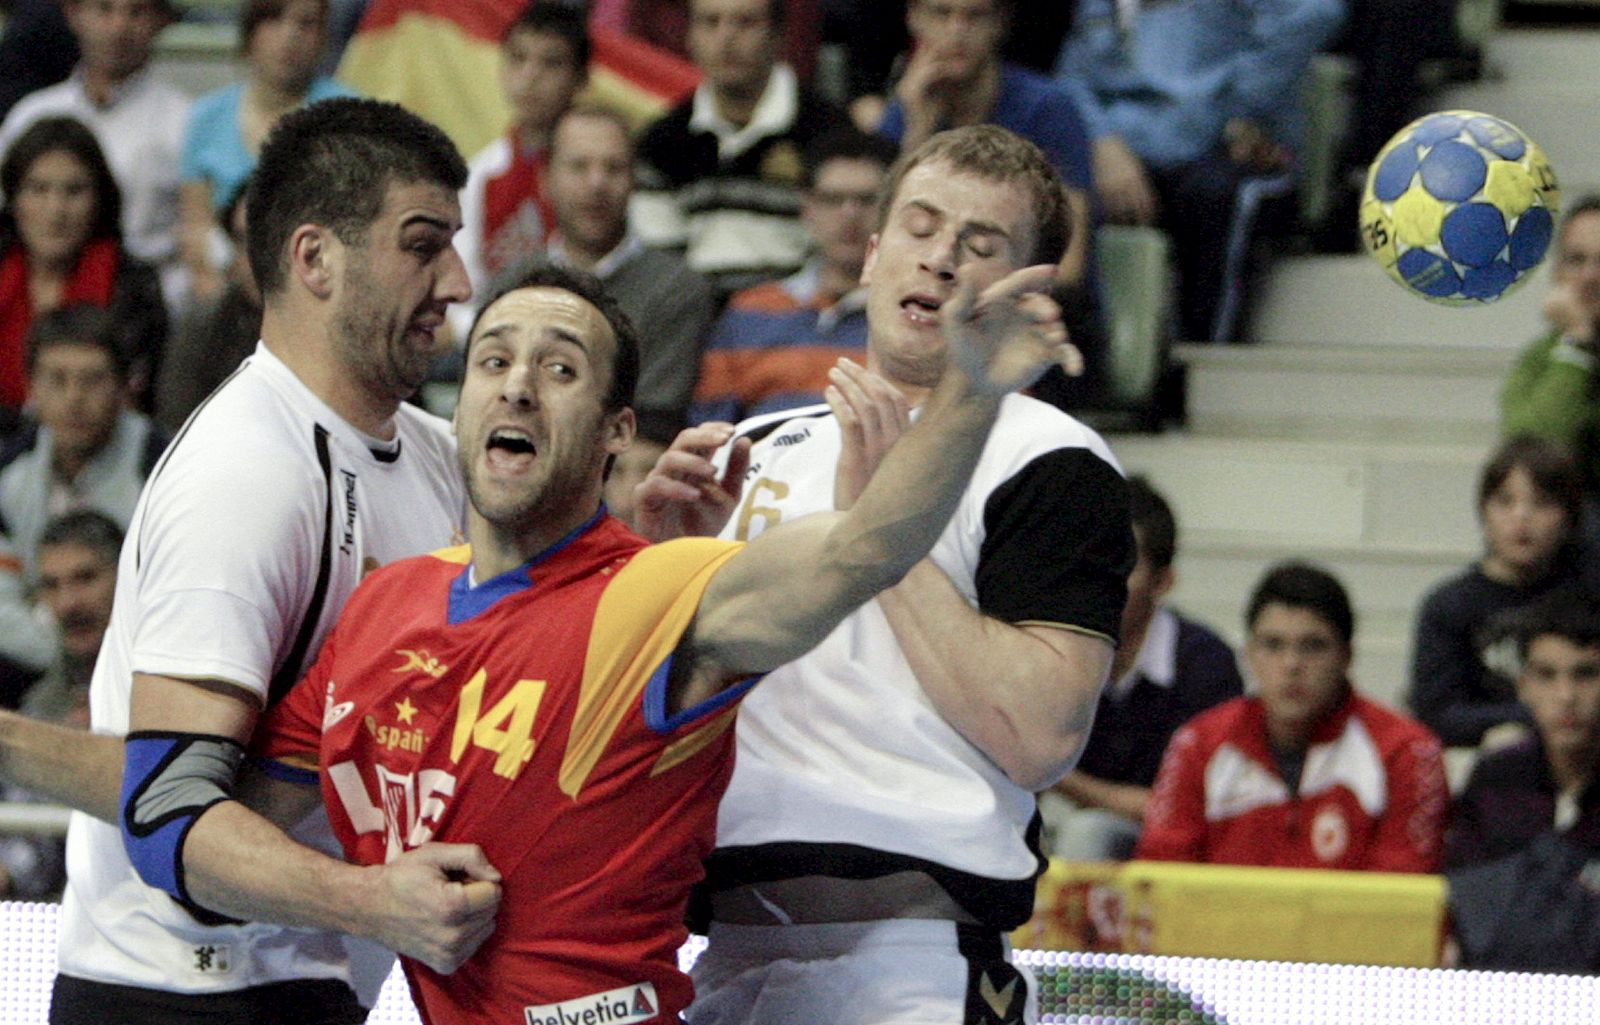 La selección española de balonmano afronta el Mundial de Suecia repleta de moral.